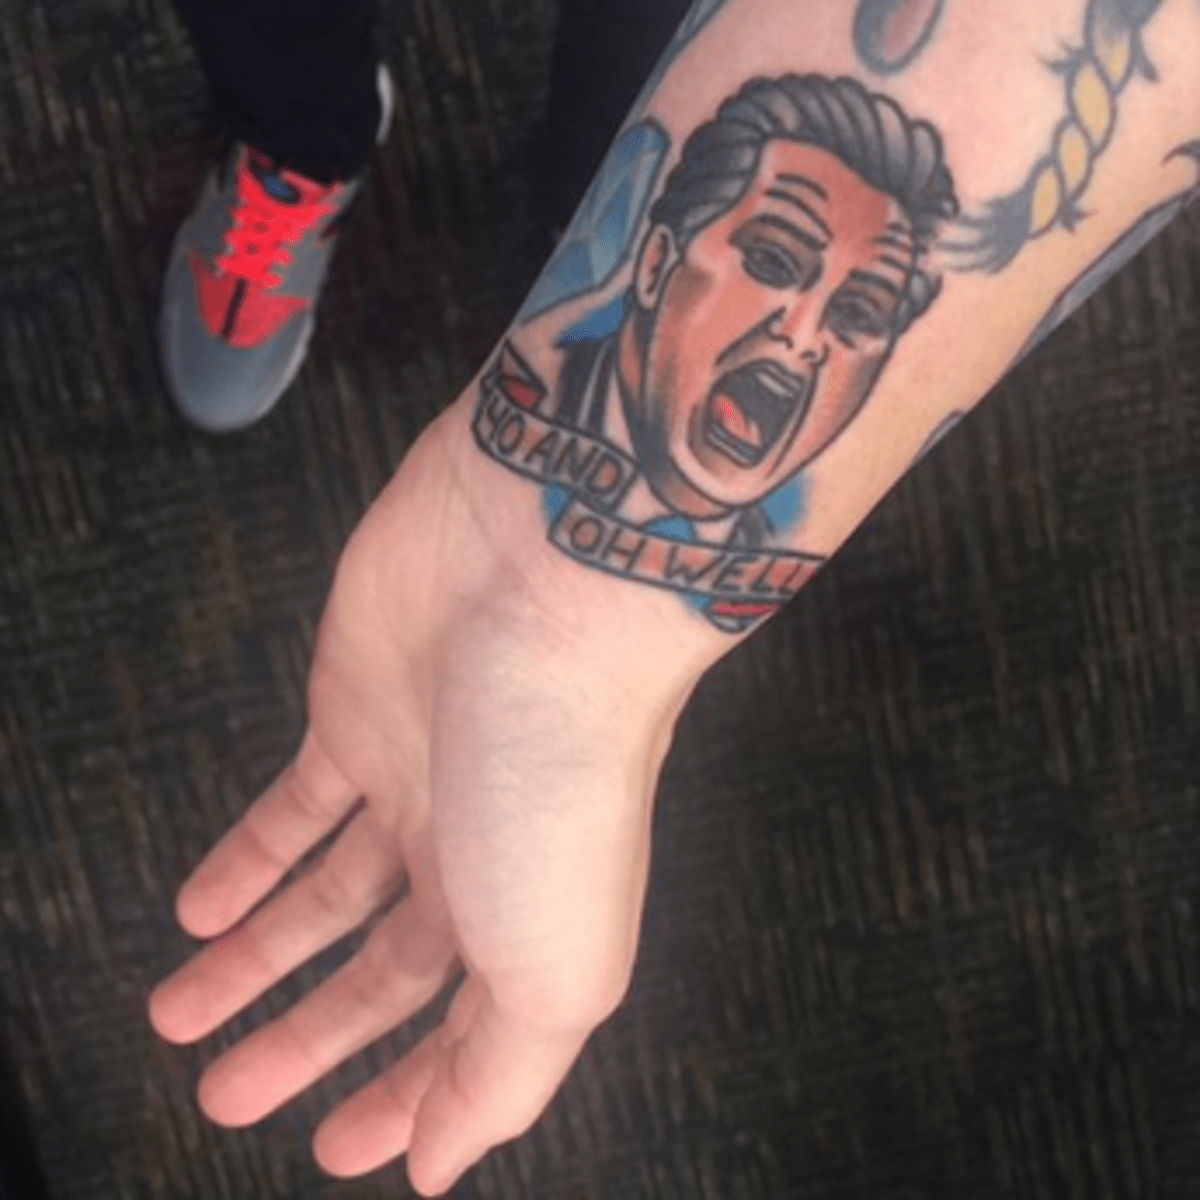 Fan gets CauleyStein leg tattoo